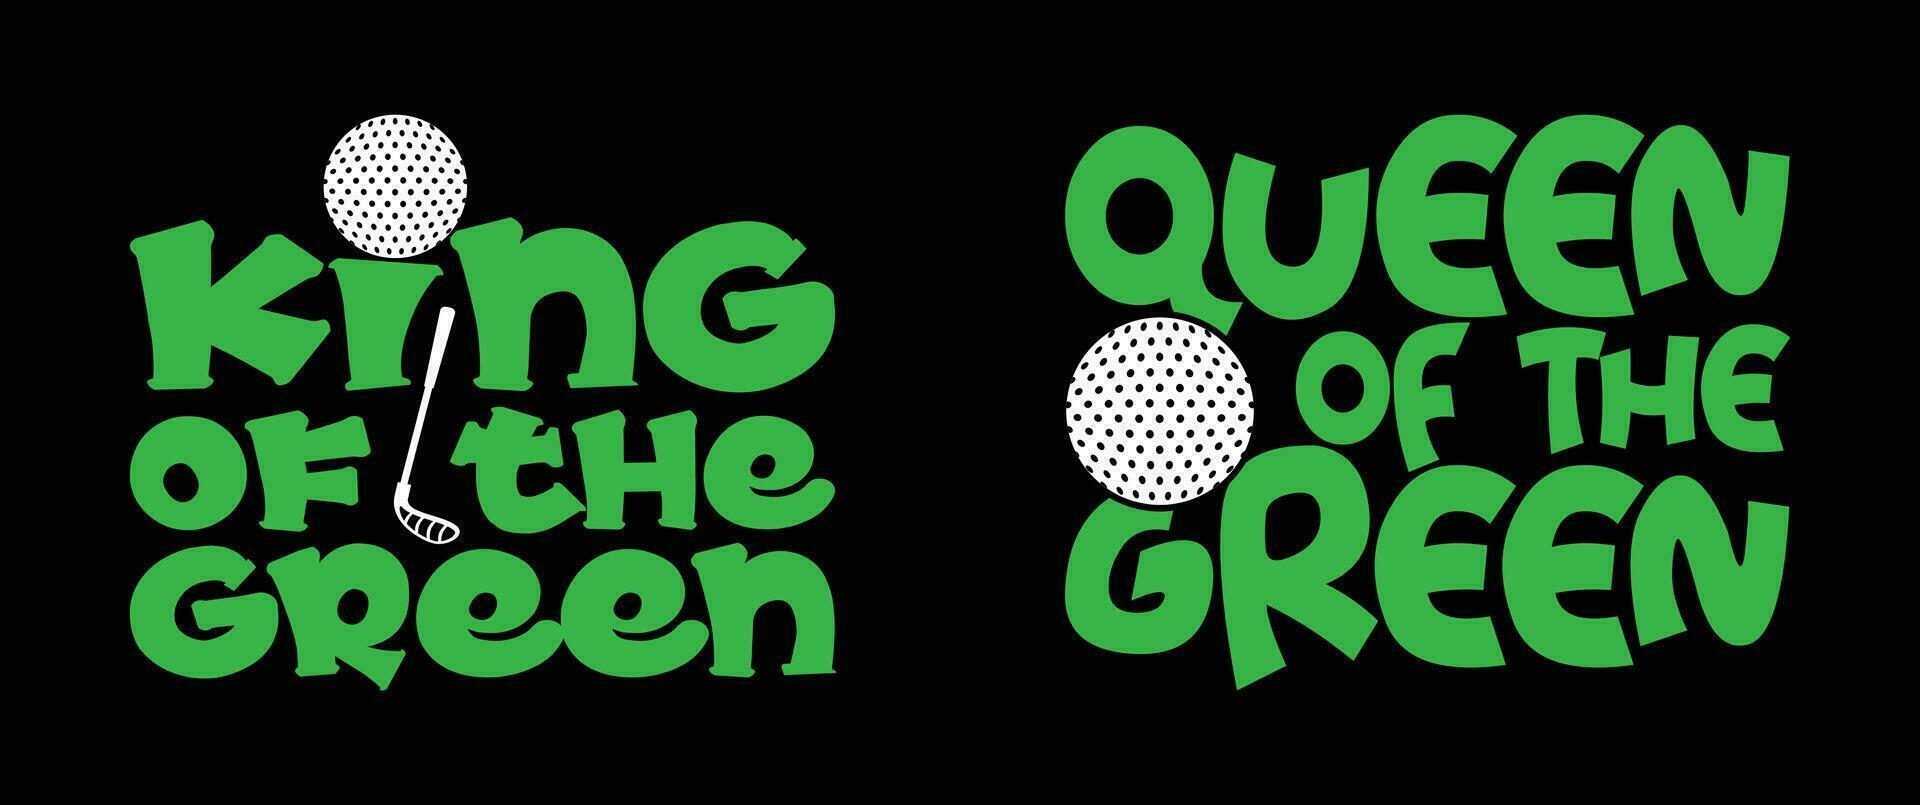 Königin von das Grün, König von das Grün, Golf t Hemd Design vektor